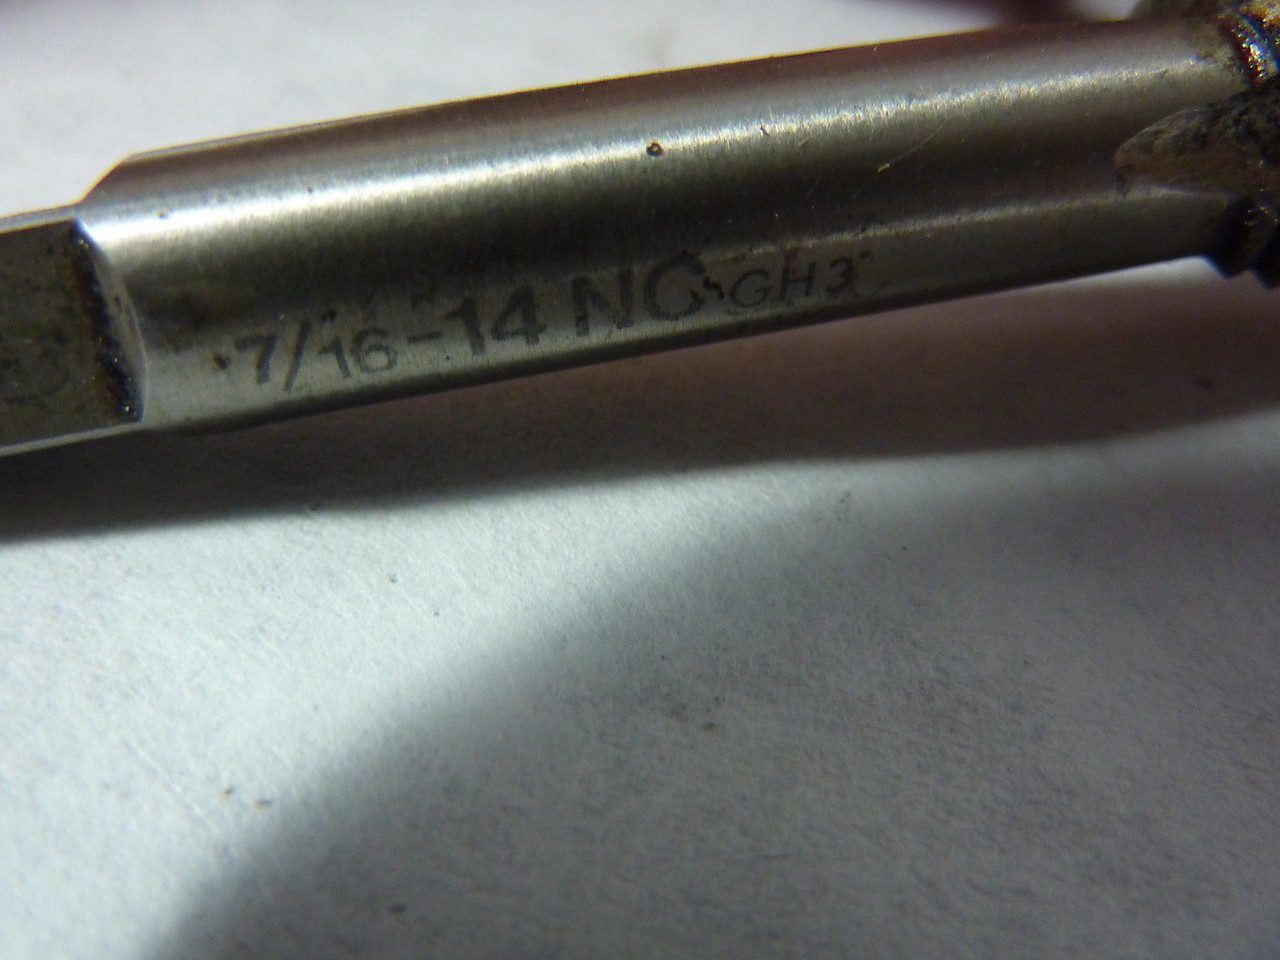 SKF 7/16-14NC GH3 Carbide Twist Drill Tool ! NEW !